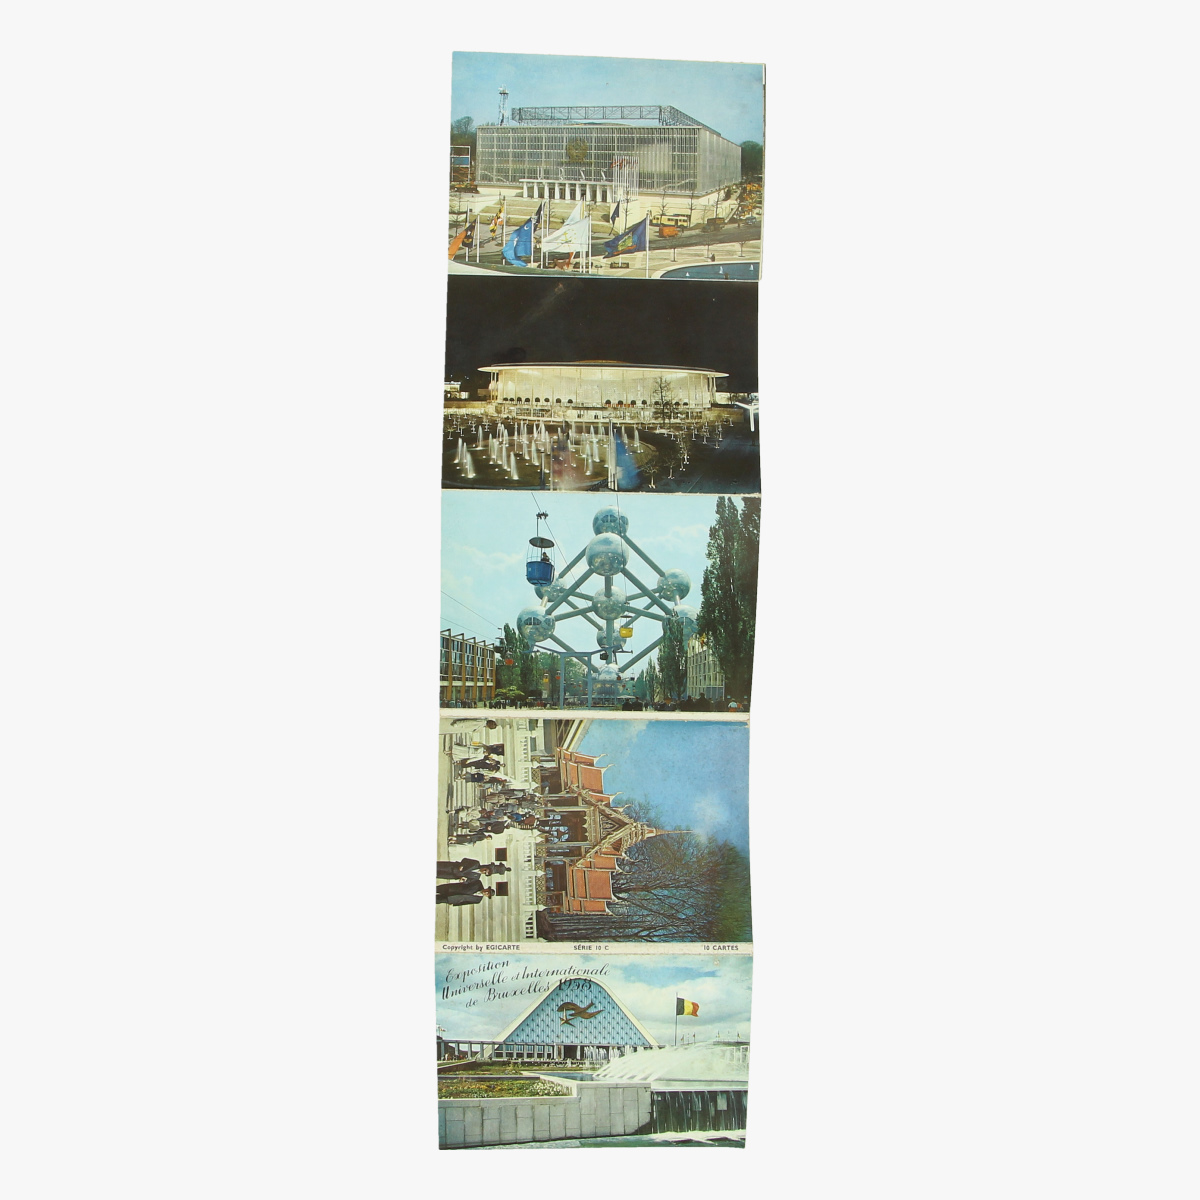 Afbeeldingen van expo 58 postkaarten 10 stuks serie 10c copyright by egicarte